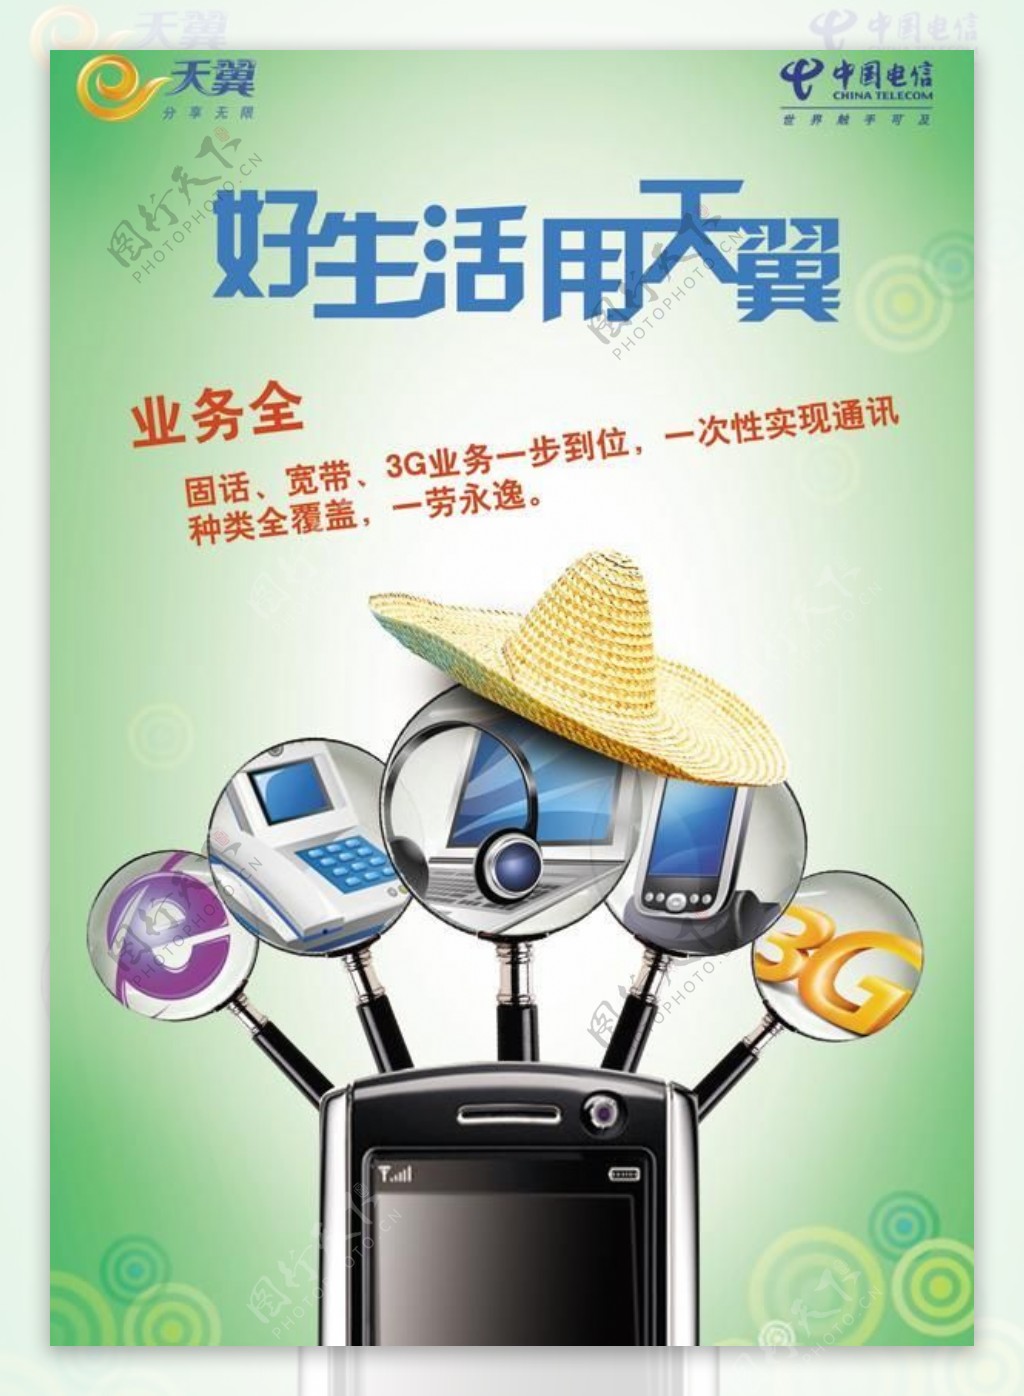 中国天翼3G网络手机PSD广告